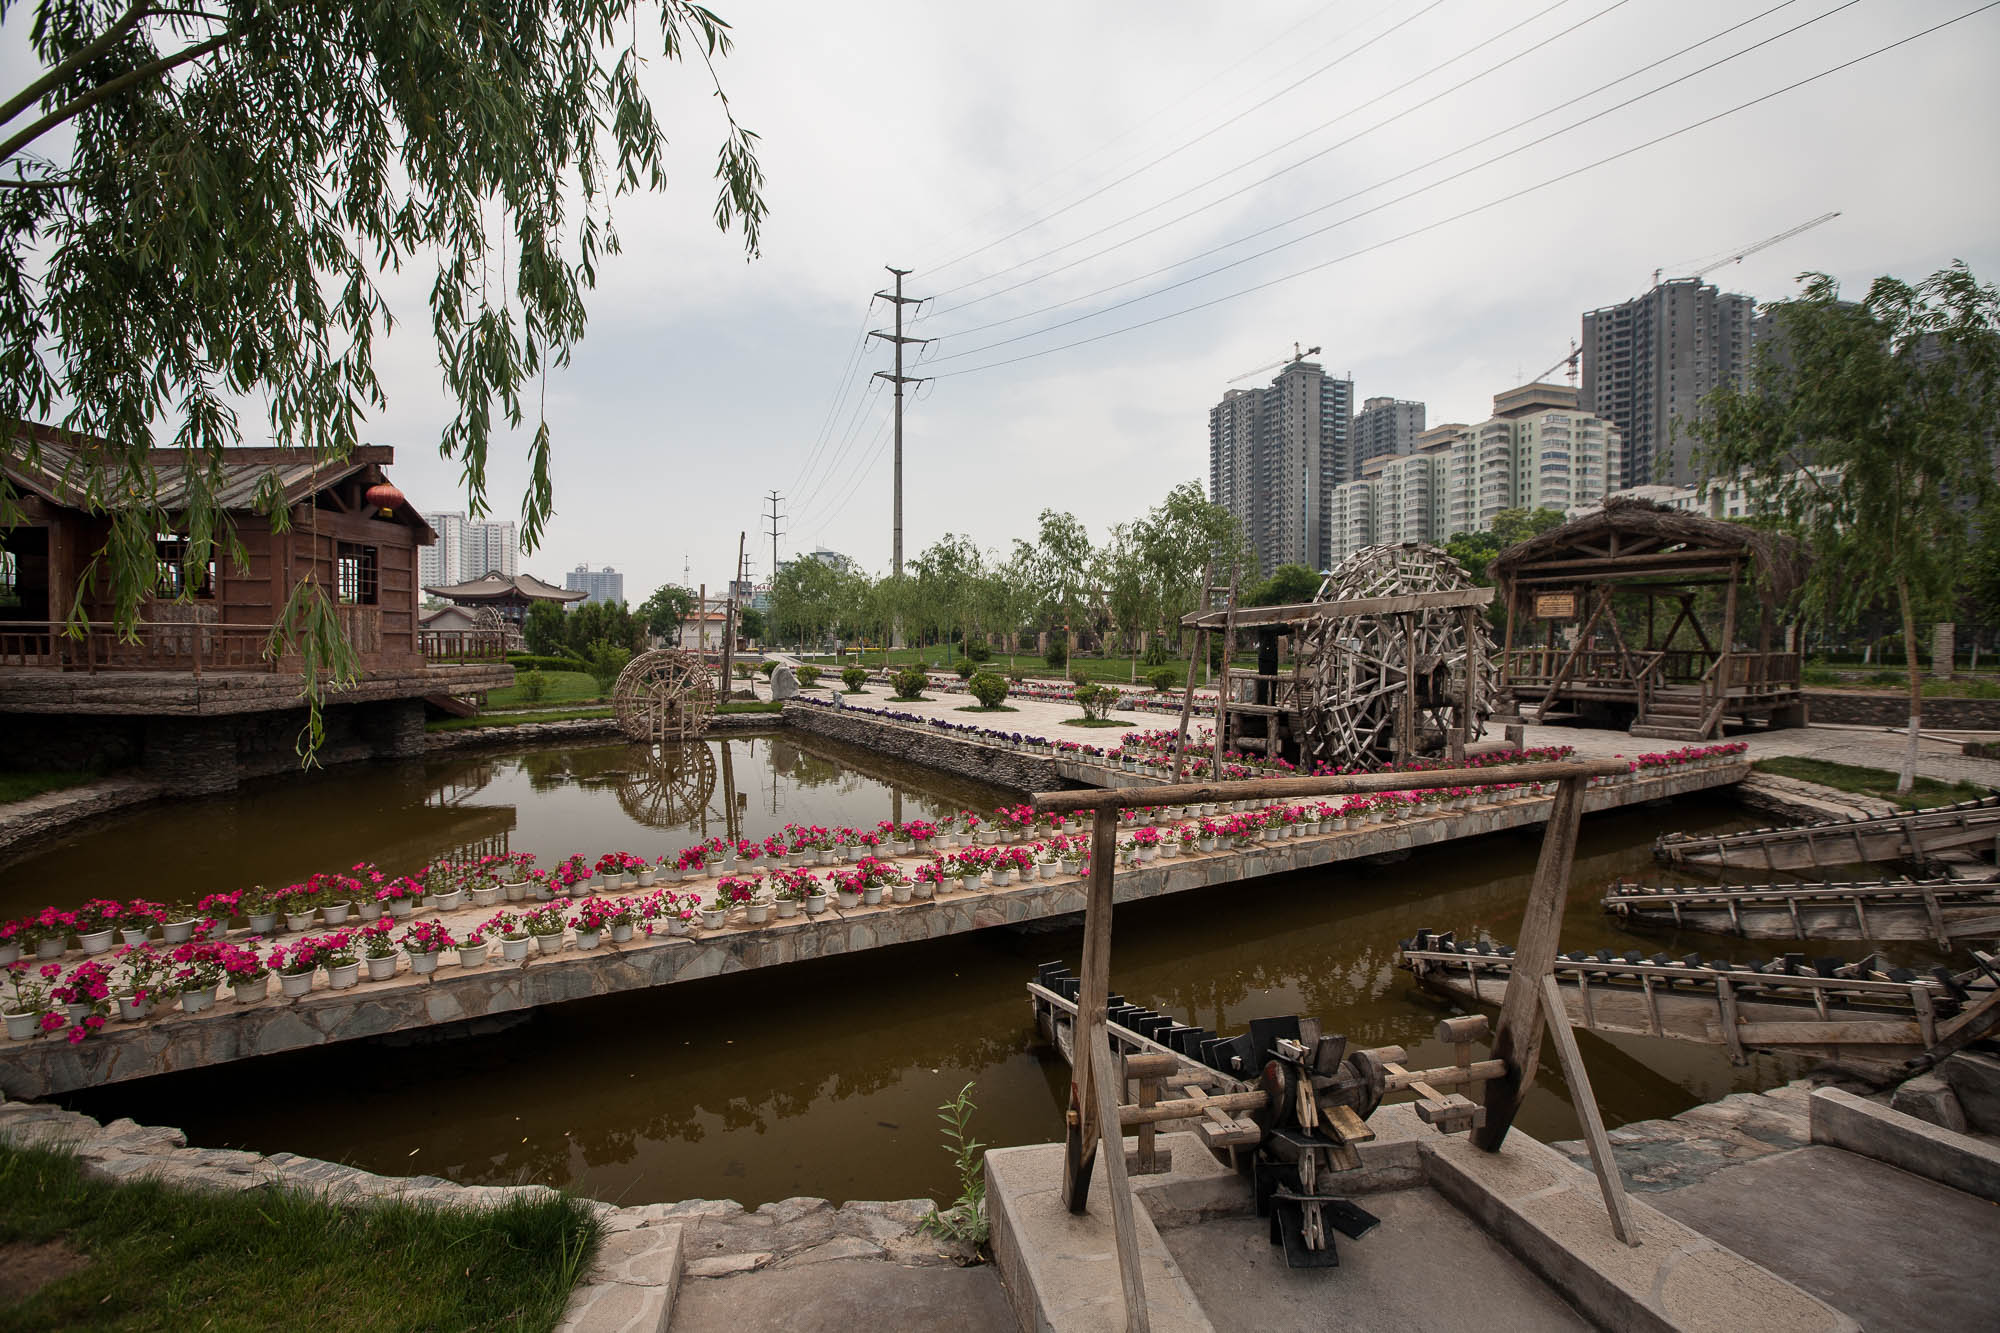 Lanzhou Waterwheel Exhibition Park